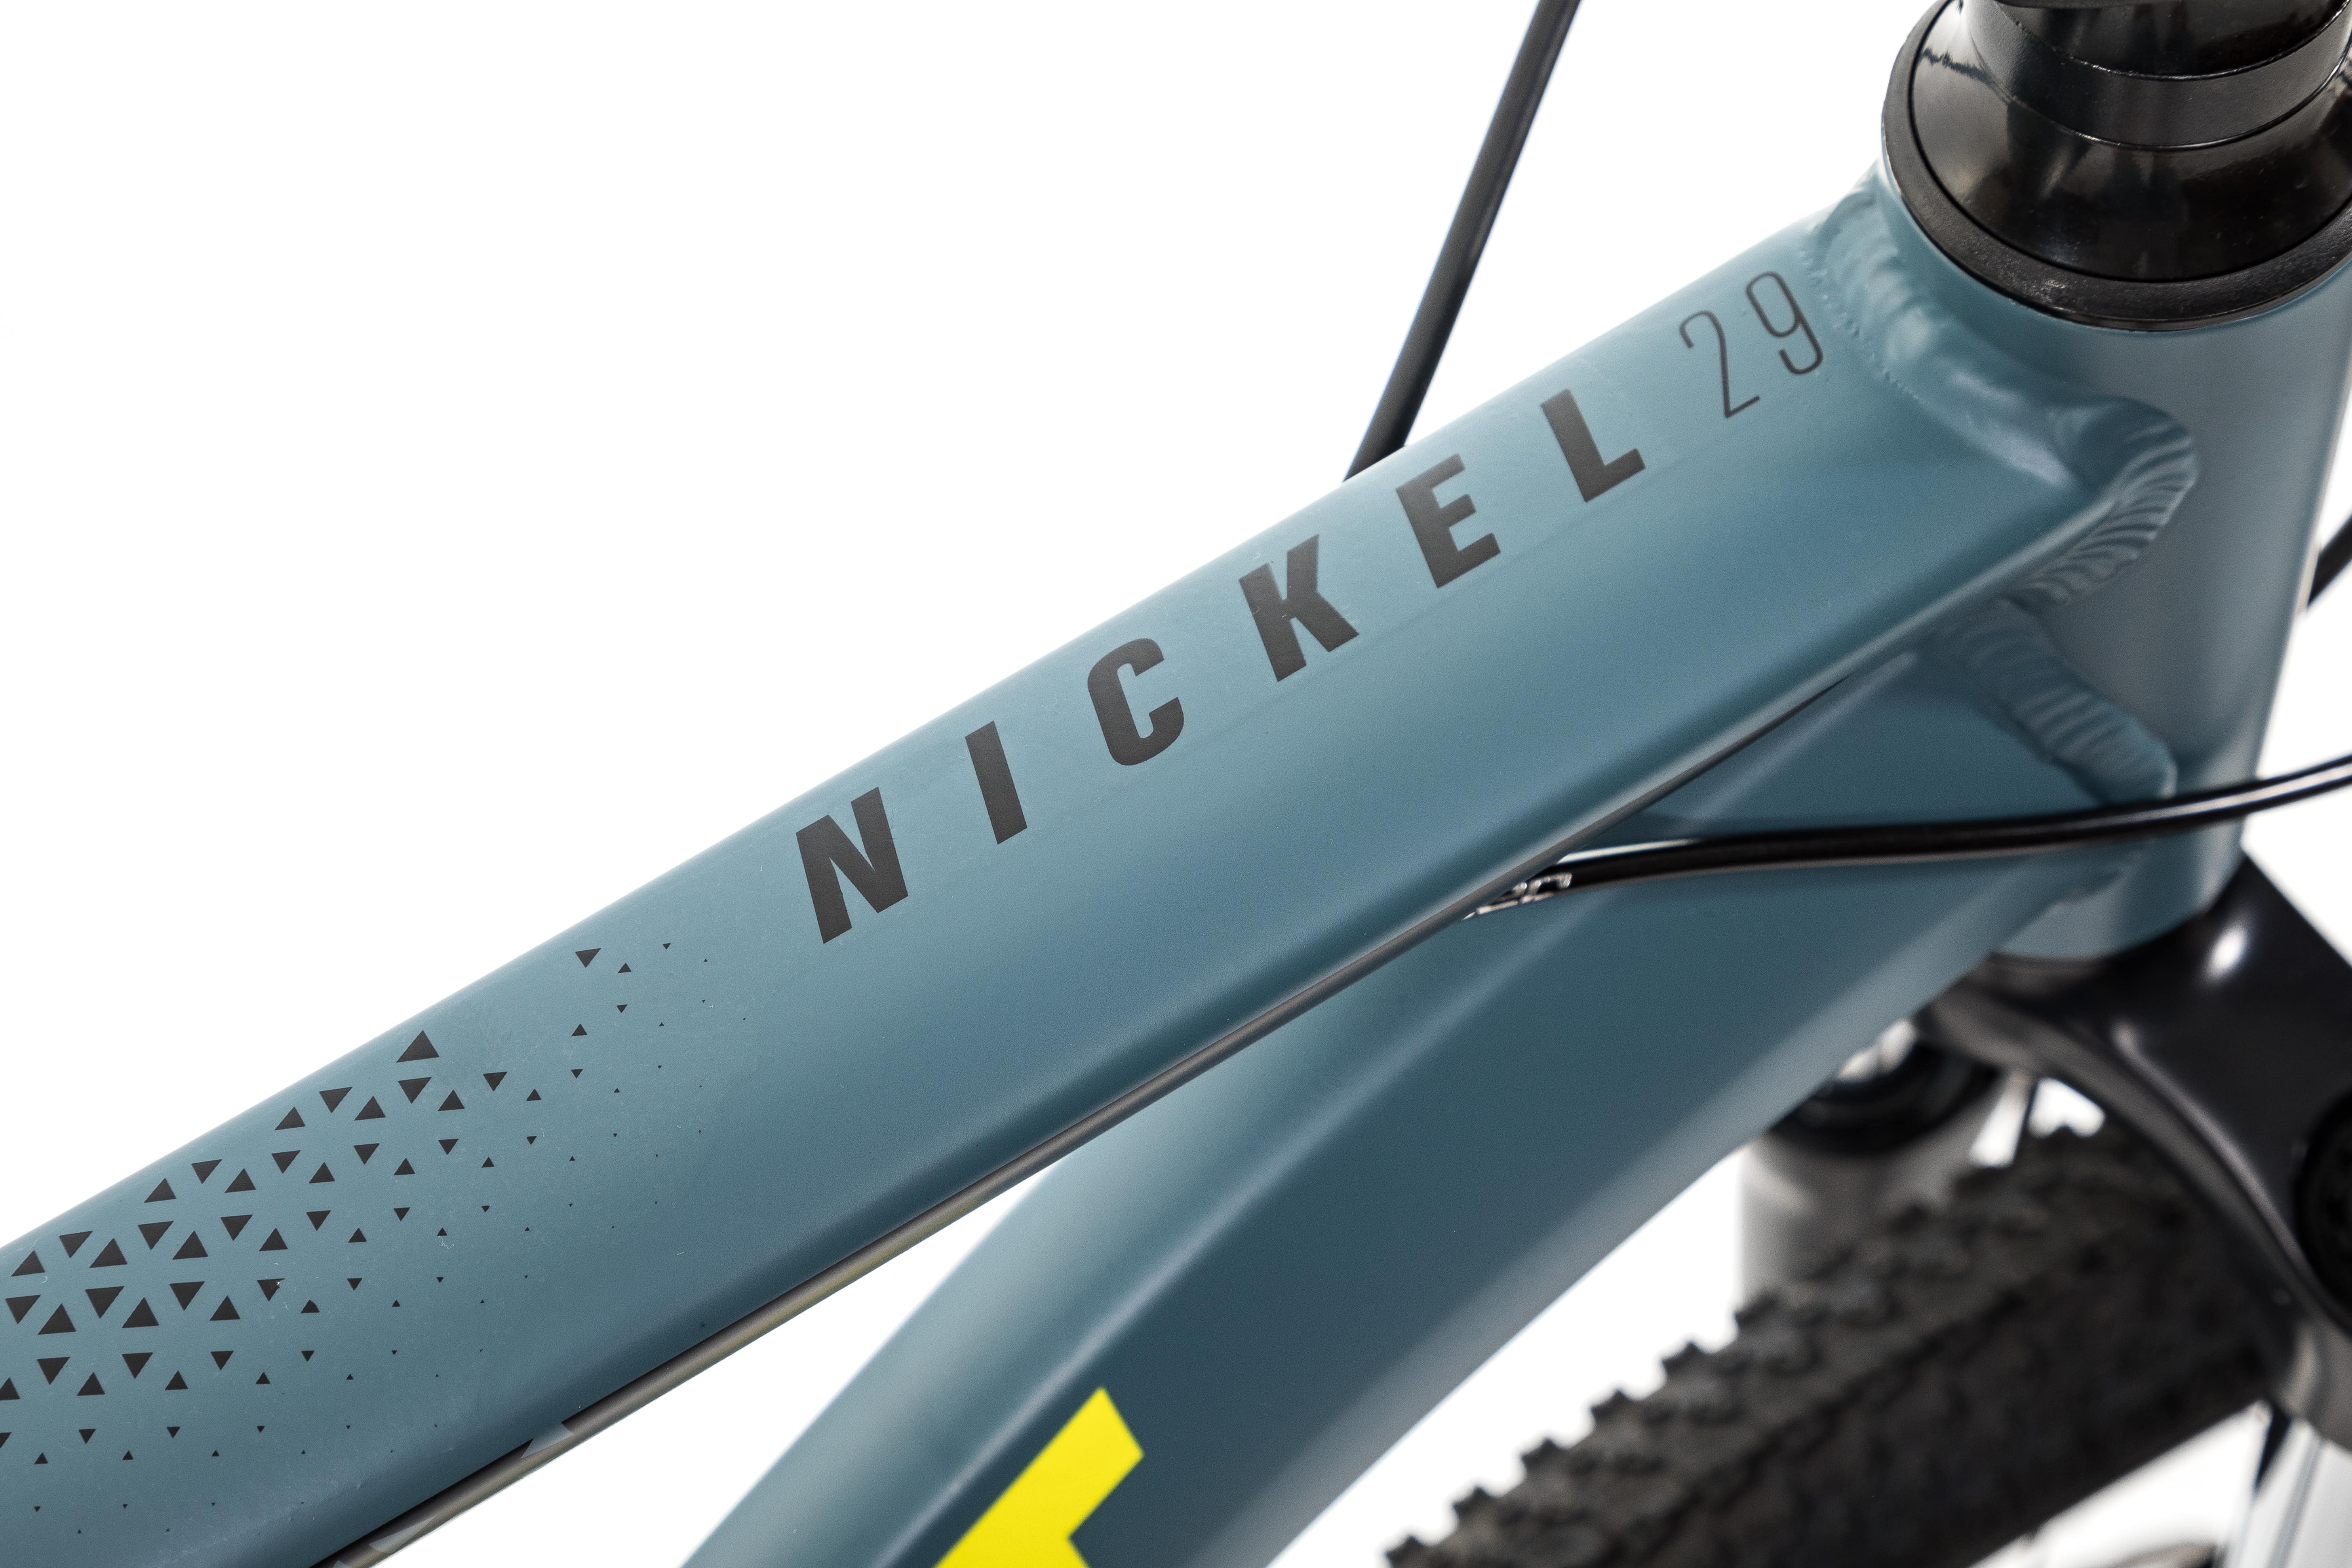 Велосипед Aspect NICKEL 29 18" Серо-желтый (2022)